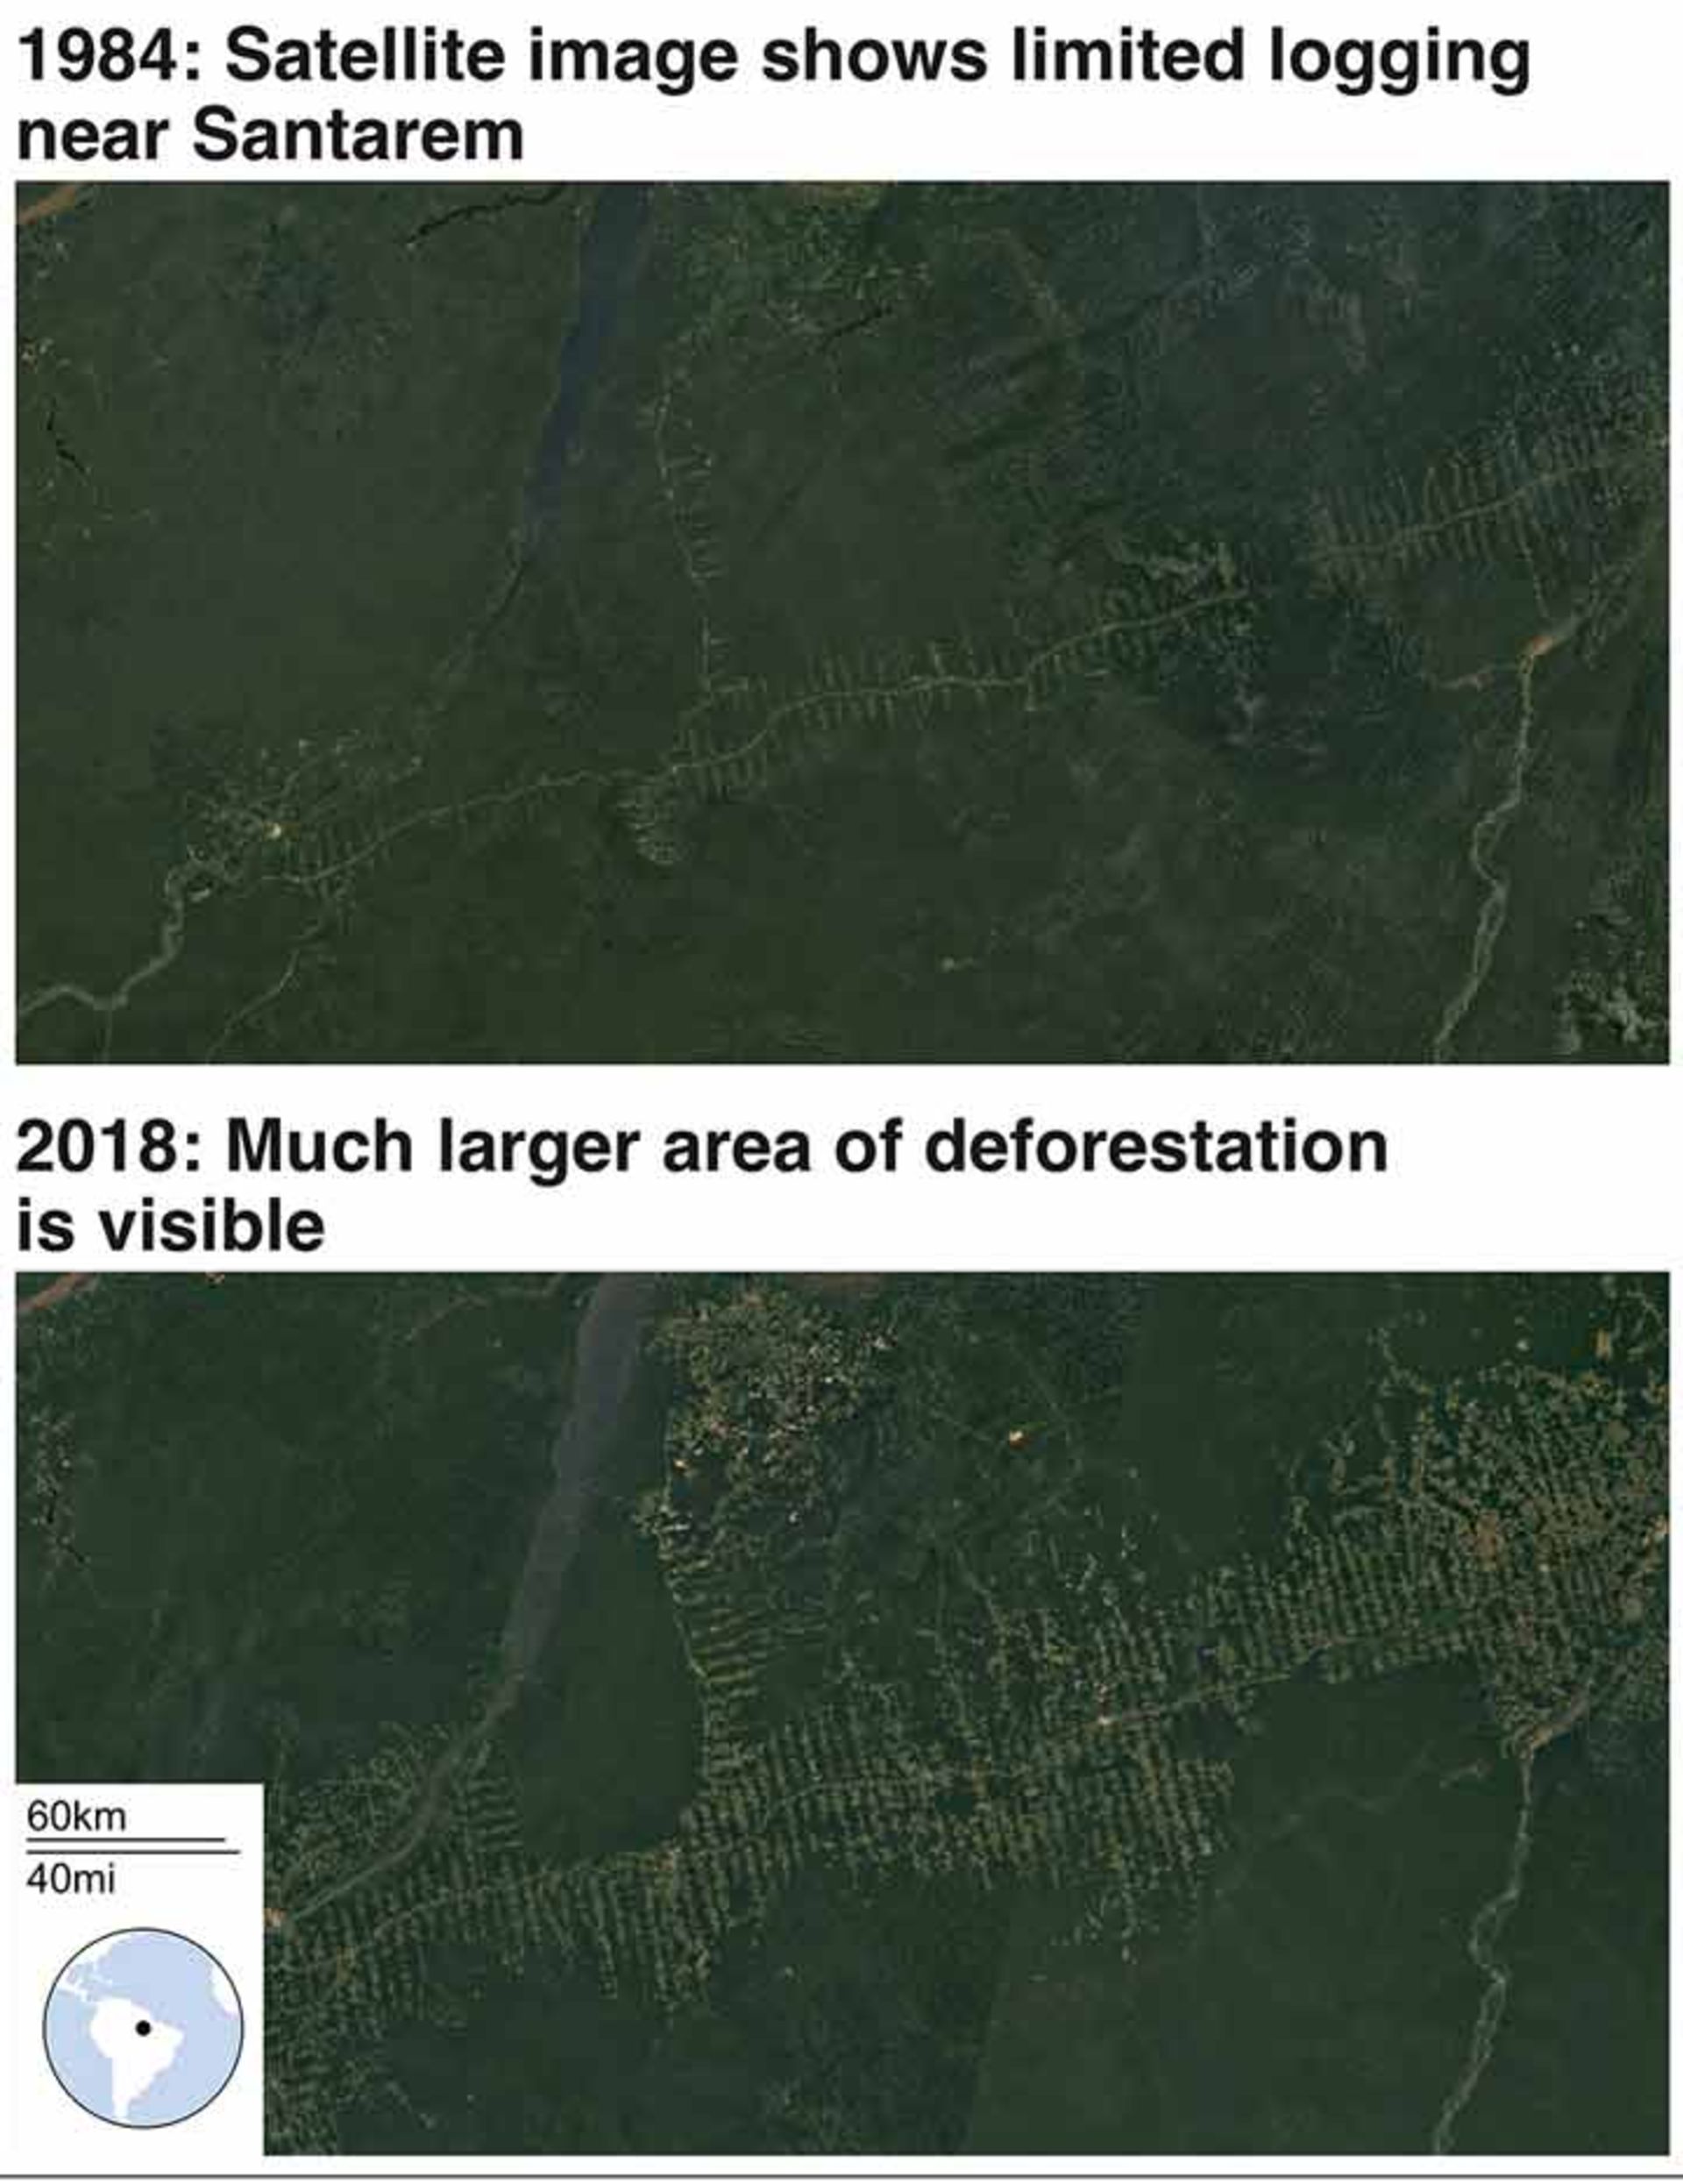 مرجع متخصصين ايران تصوير ماهواره‌اي كه قطع درختان در سال ۱۹۸۴ و ۲۰۱۸ در منطقه سانتارم را با هم مقايسه مي‌كند